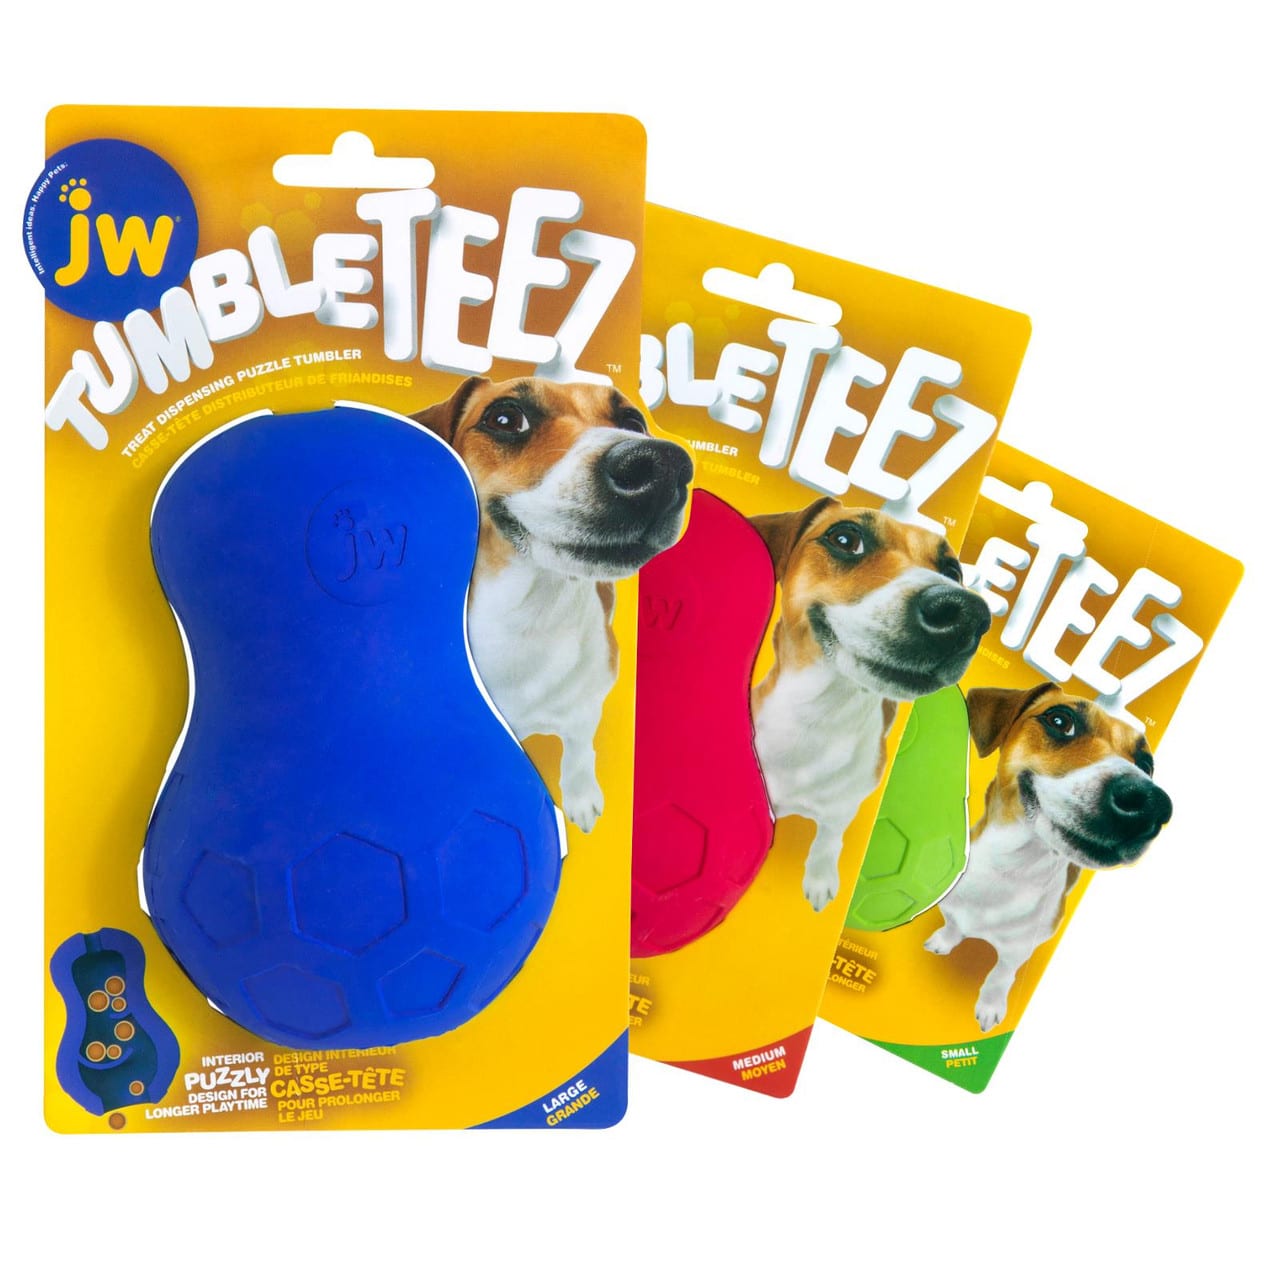 Jw-tumble-teez-honden-speelgoed